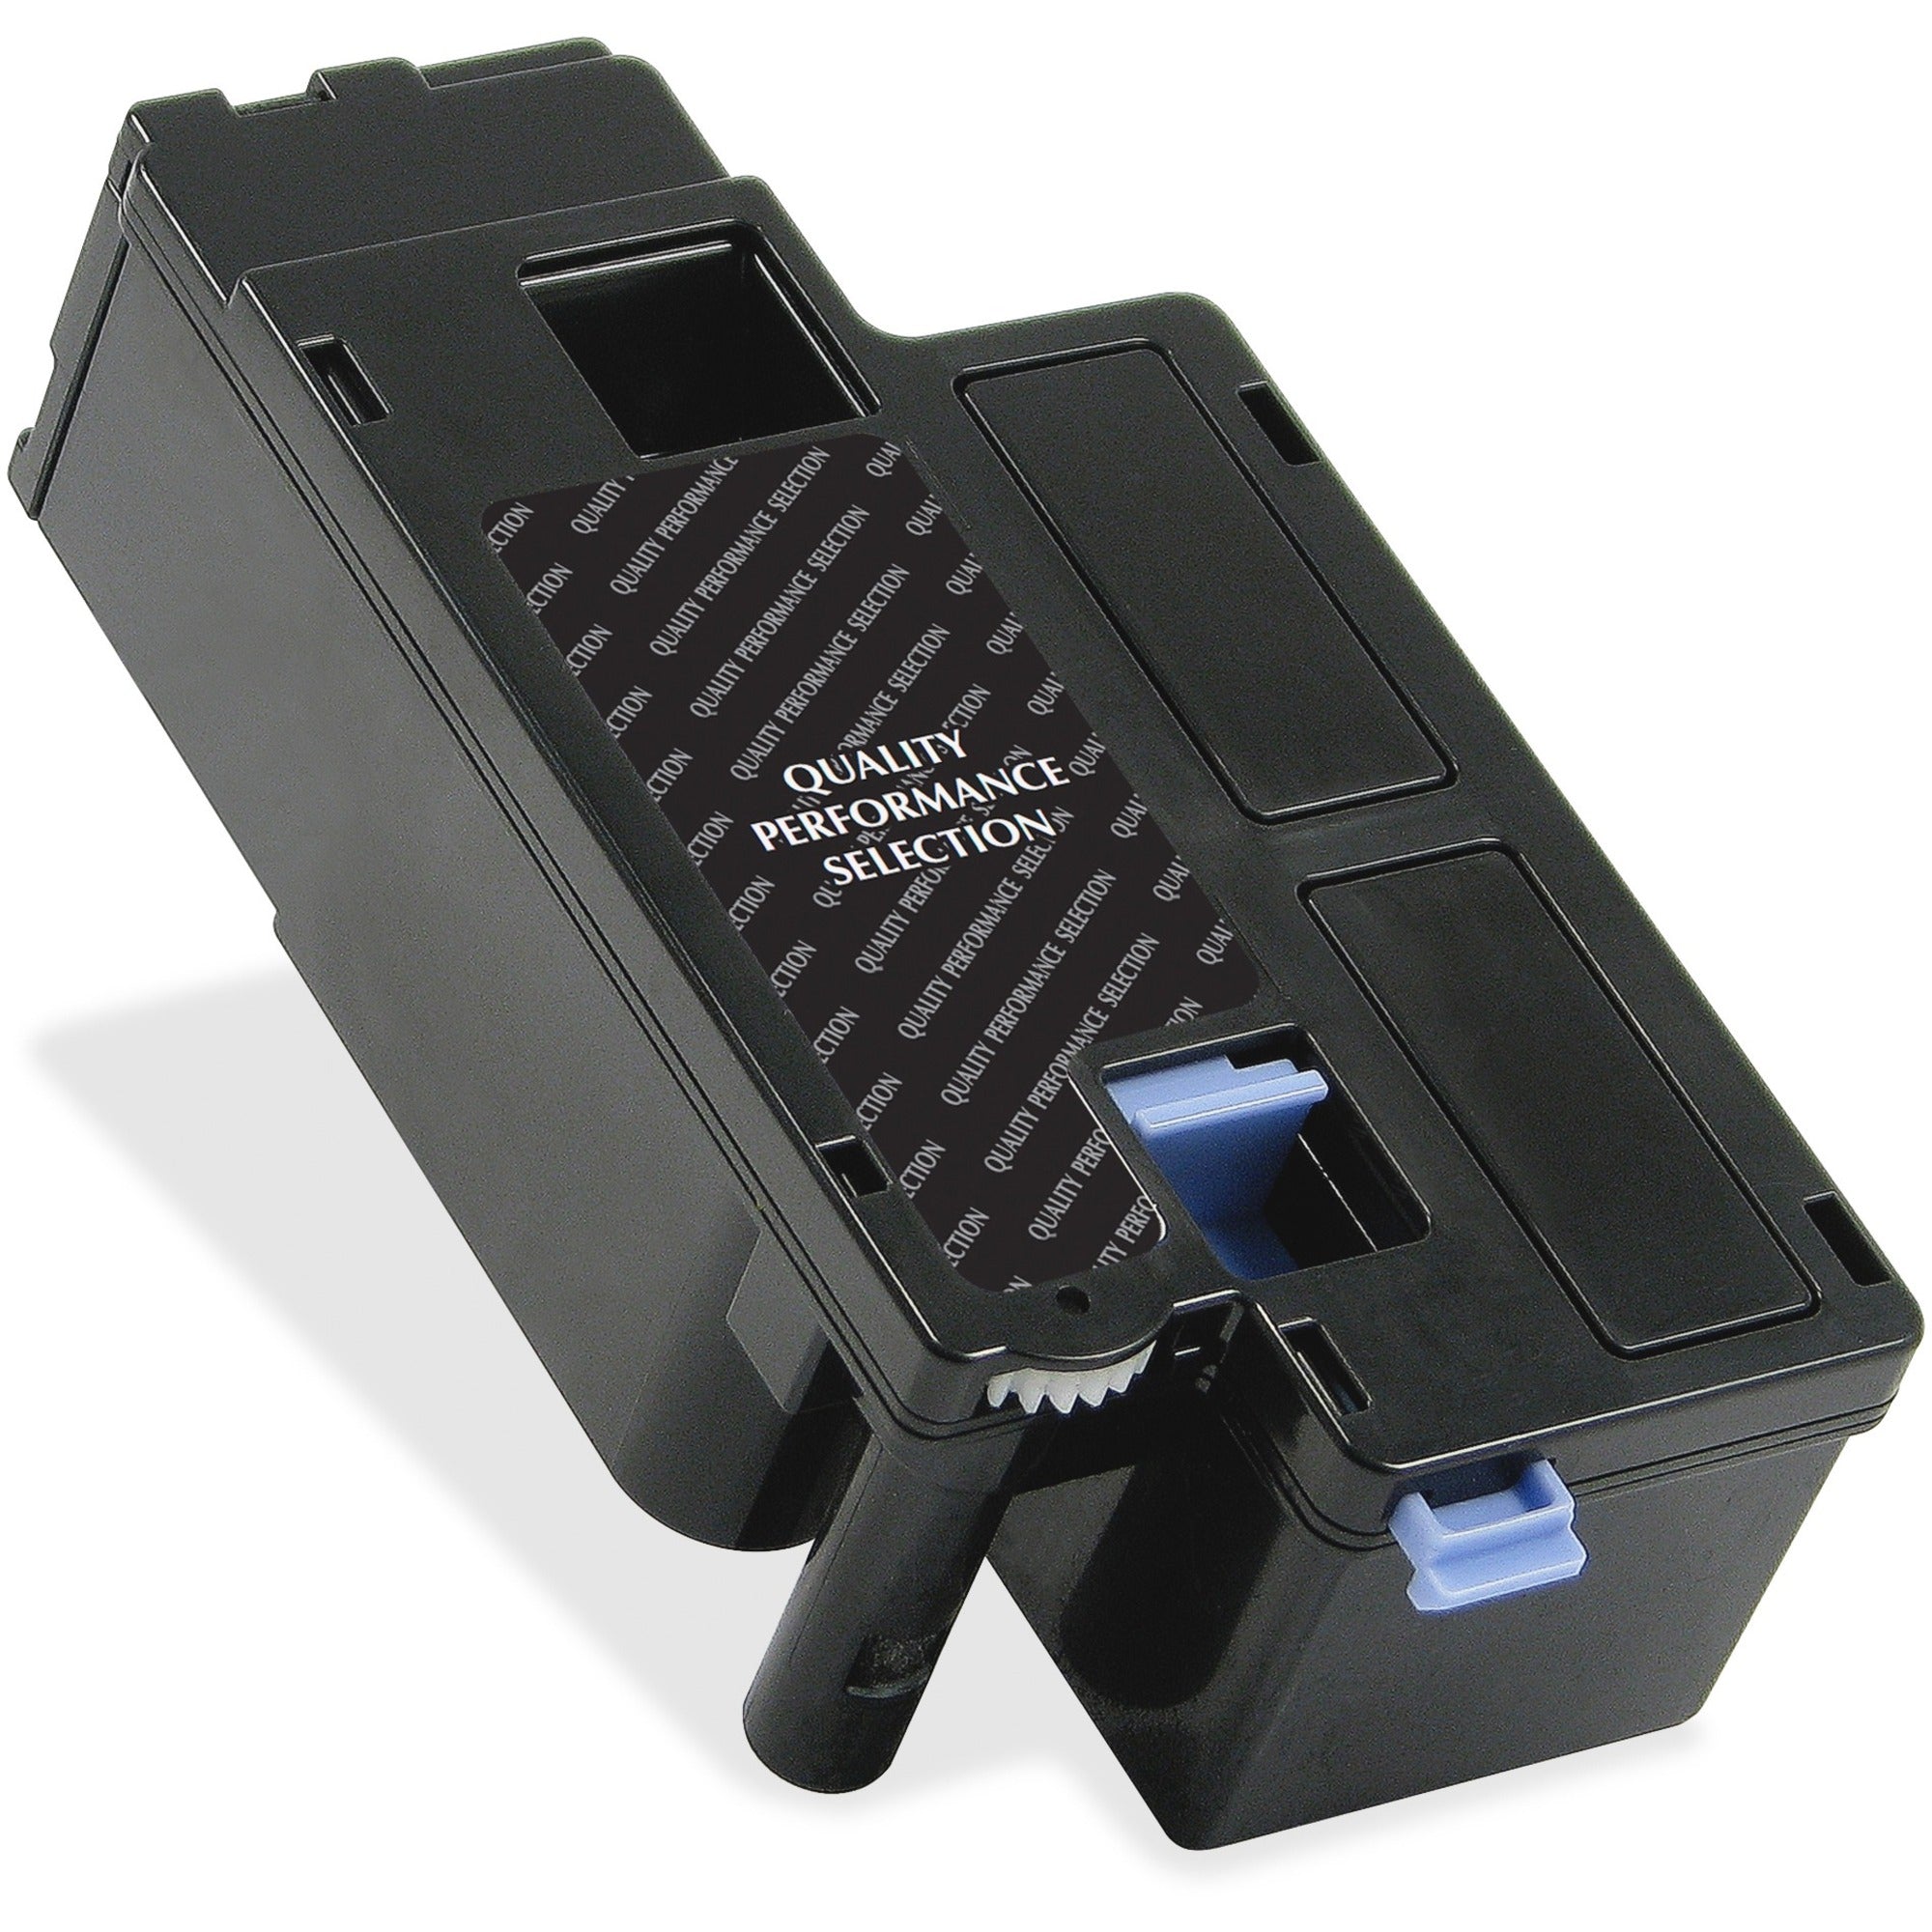 Elite Image Remanufactured Toner Cartridge Alternative For Dell - Laser - 2000 Pages - Black - 1 Each - 1